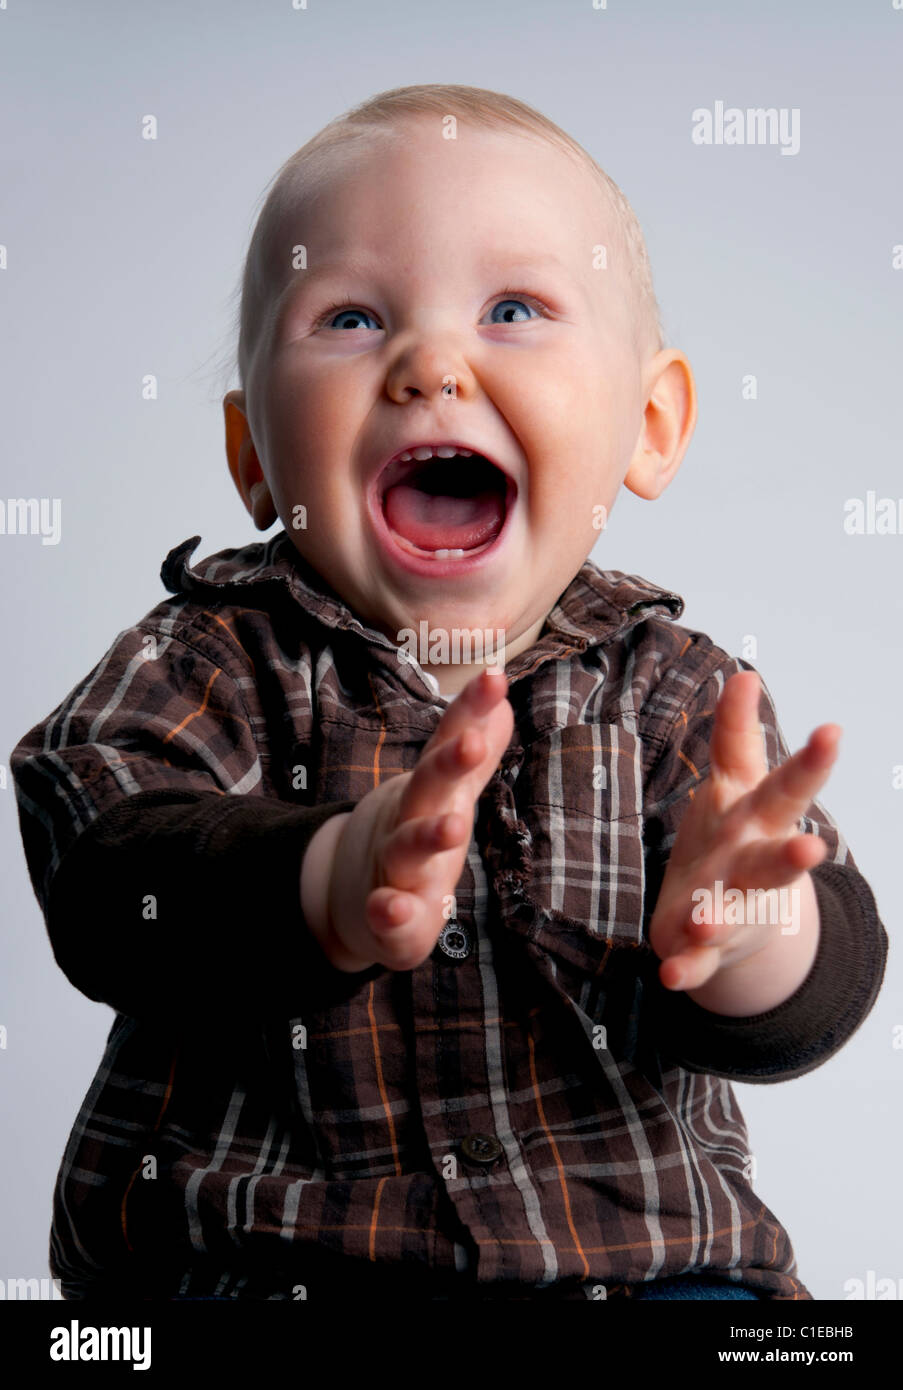 Bébé Garçon 9 mois, sourire, rire, en frappant des mains très heureux Banque D'Images